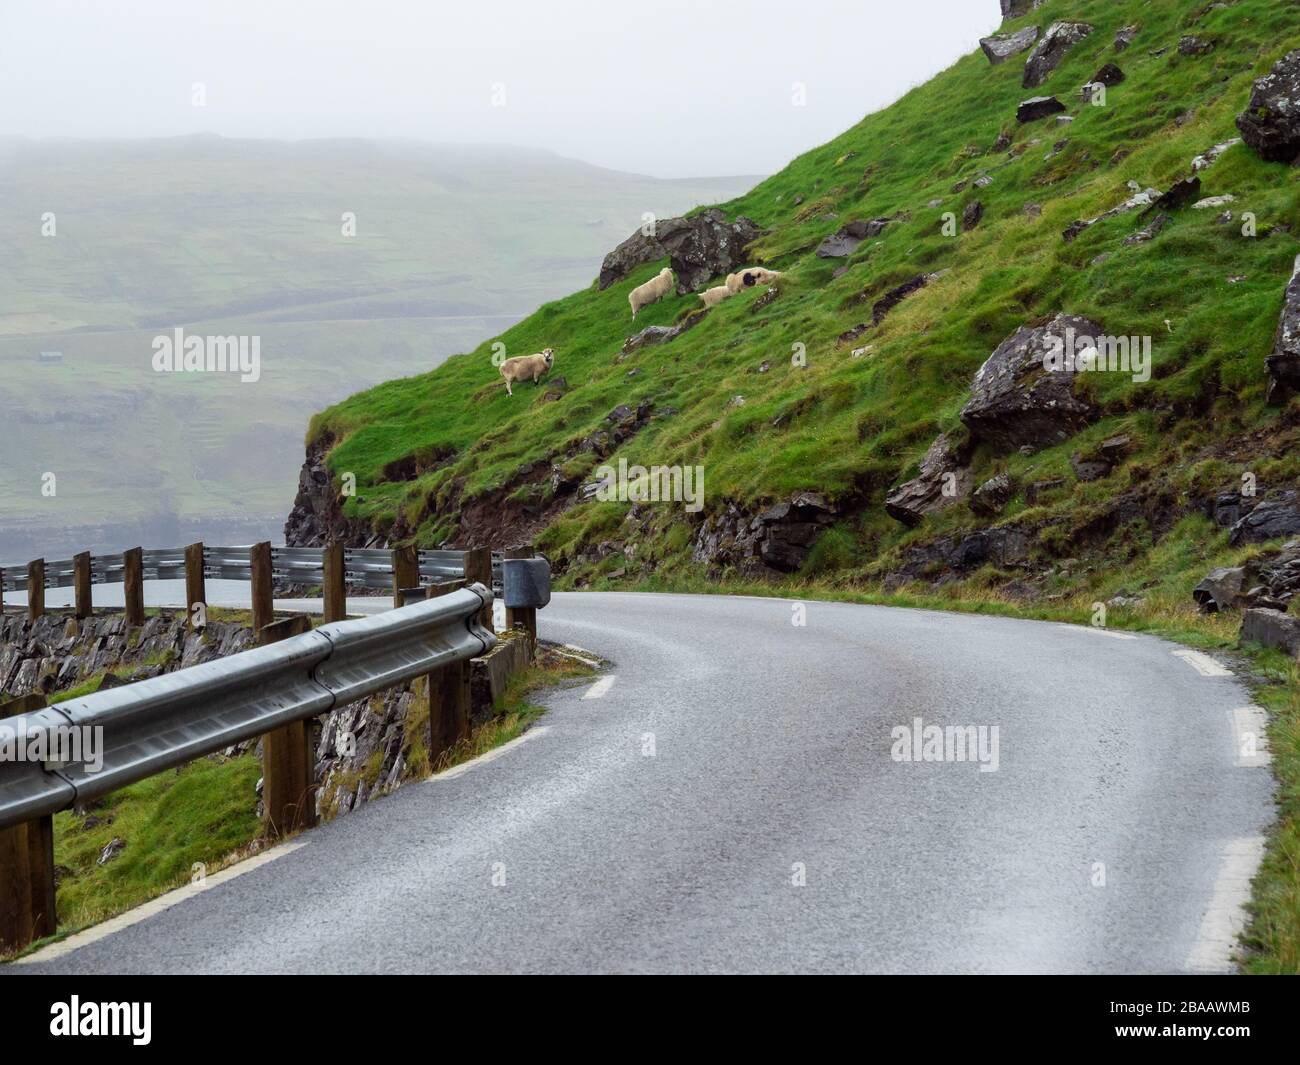 Isole Faroe. Strada tra campi verdi. Sullo sfondo si arrampicano le pecore sul pendio. Paesaggio frizzante. Foto Stock